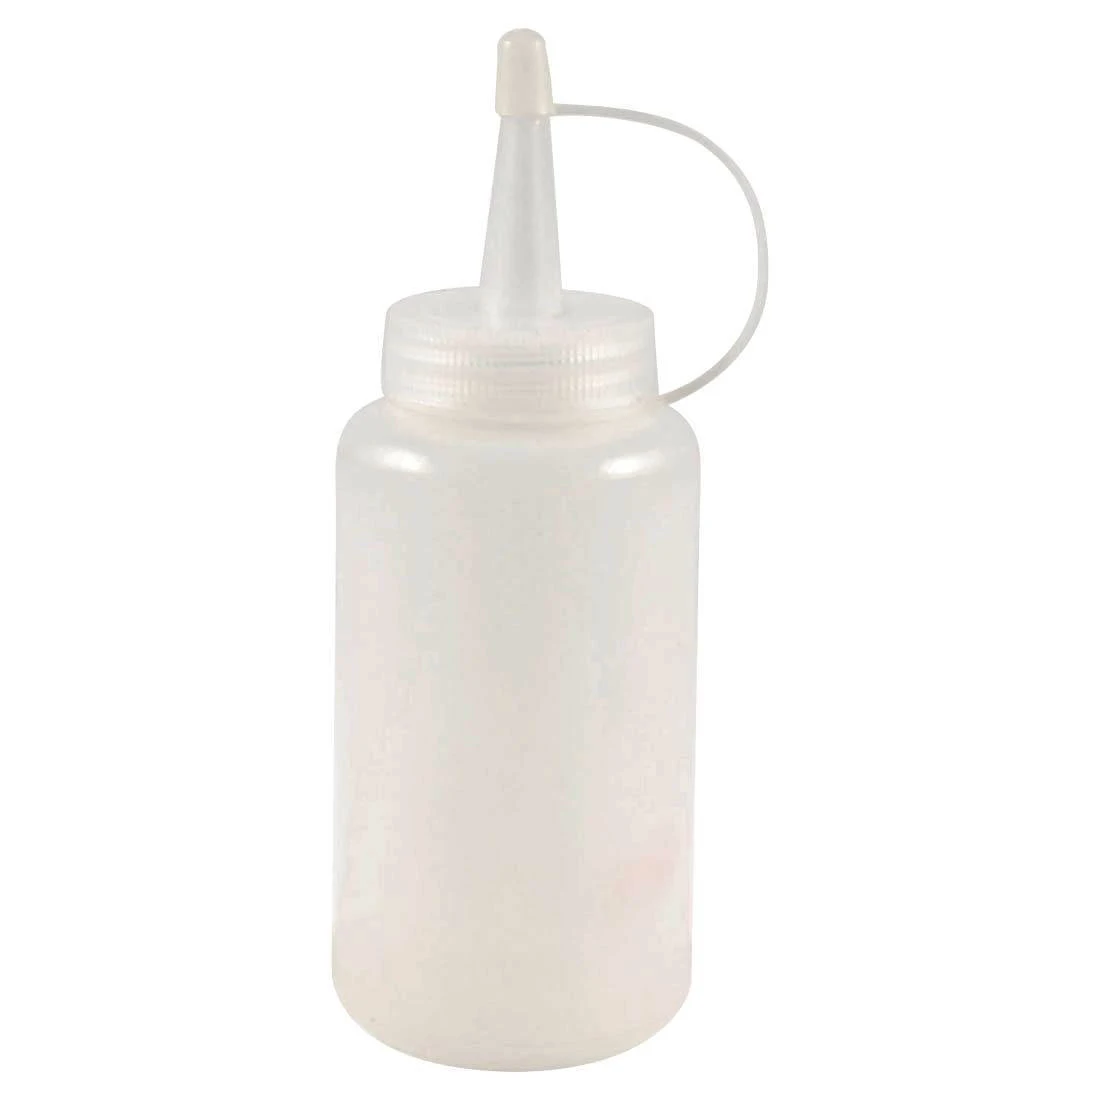 DSHA Новый горячий белый пластиковый отжим бутылка масляный соус диспенсер сопло